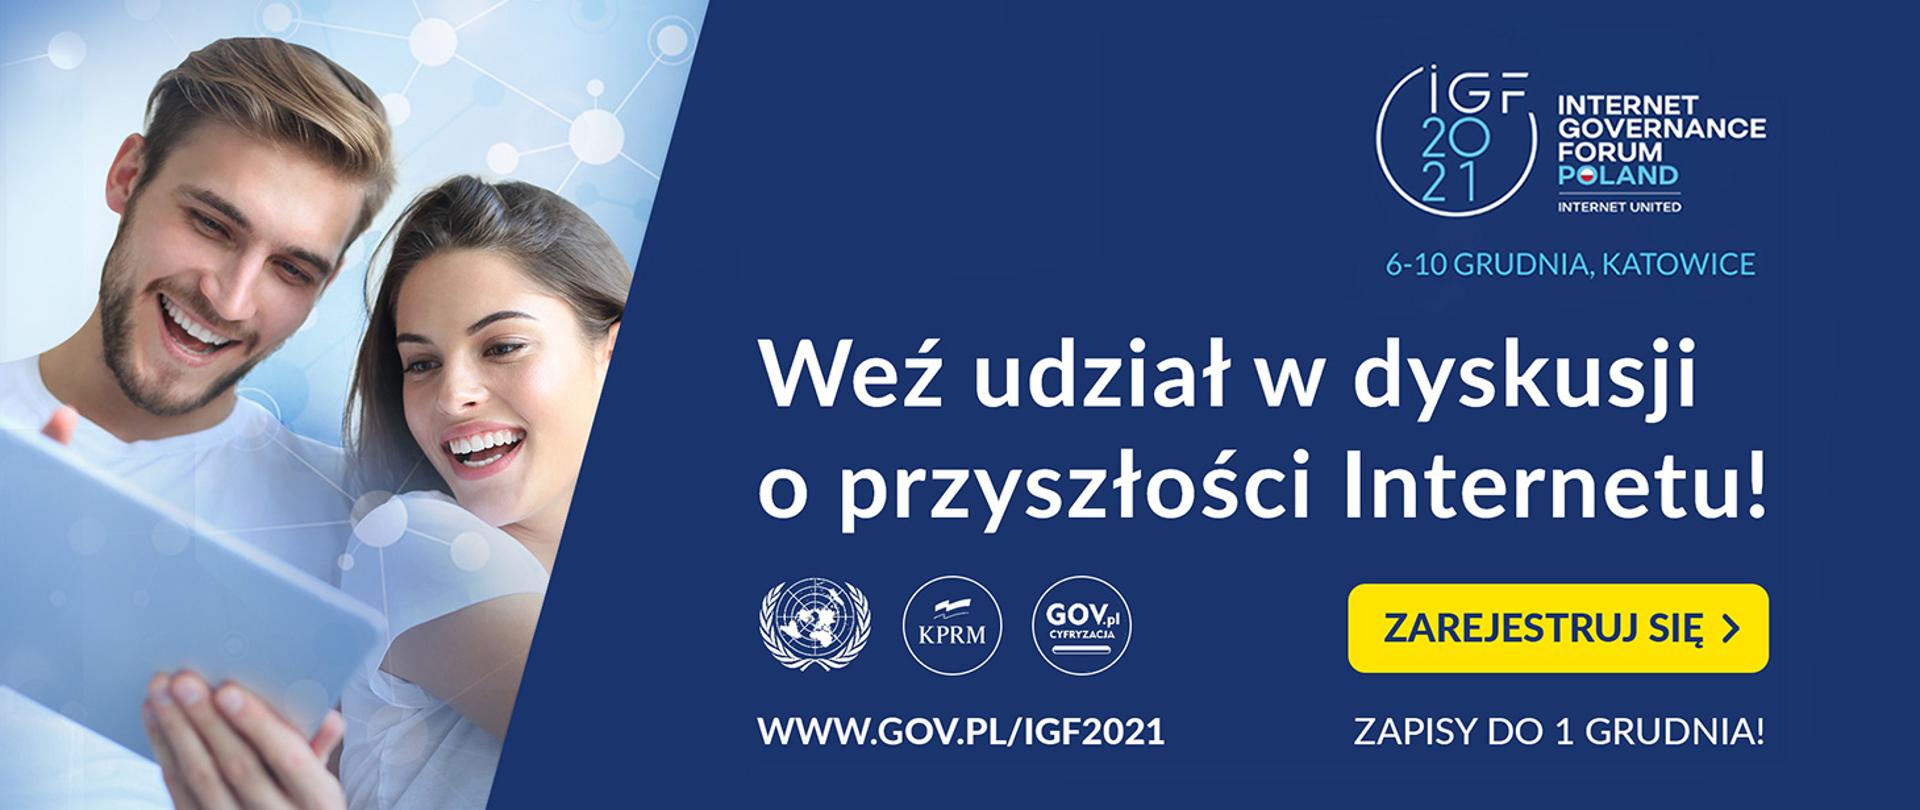 IGF 2021 6-10 grudnia Katowice